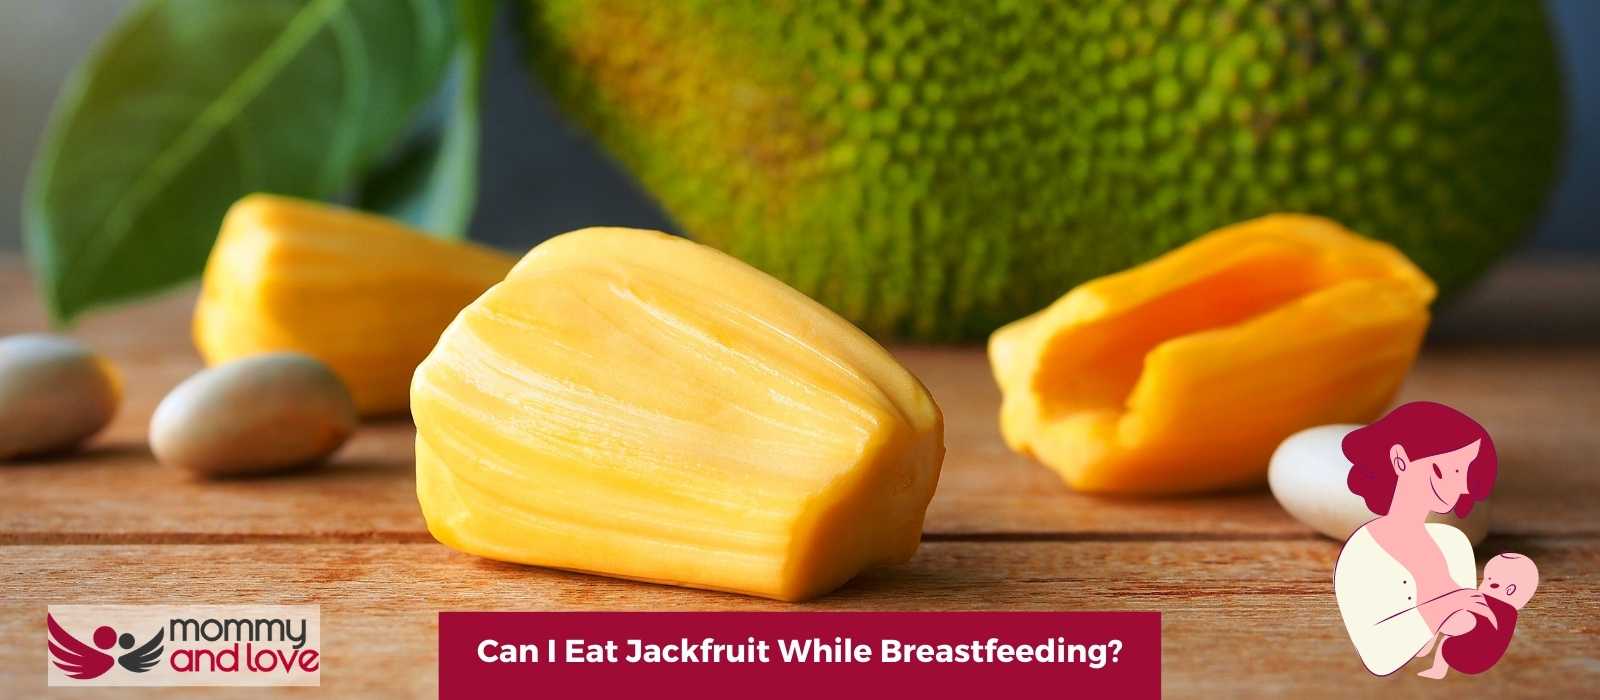 Can I Eat Jackfruit While Breastfeeding